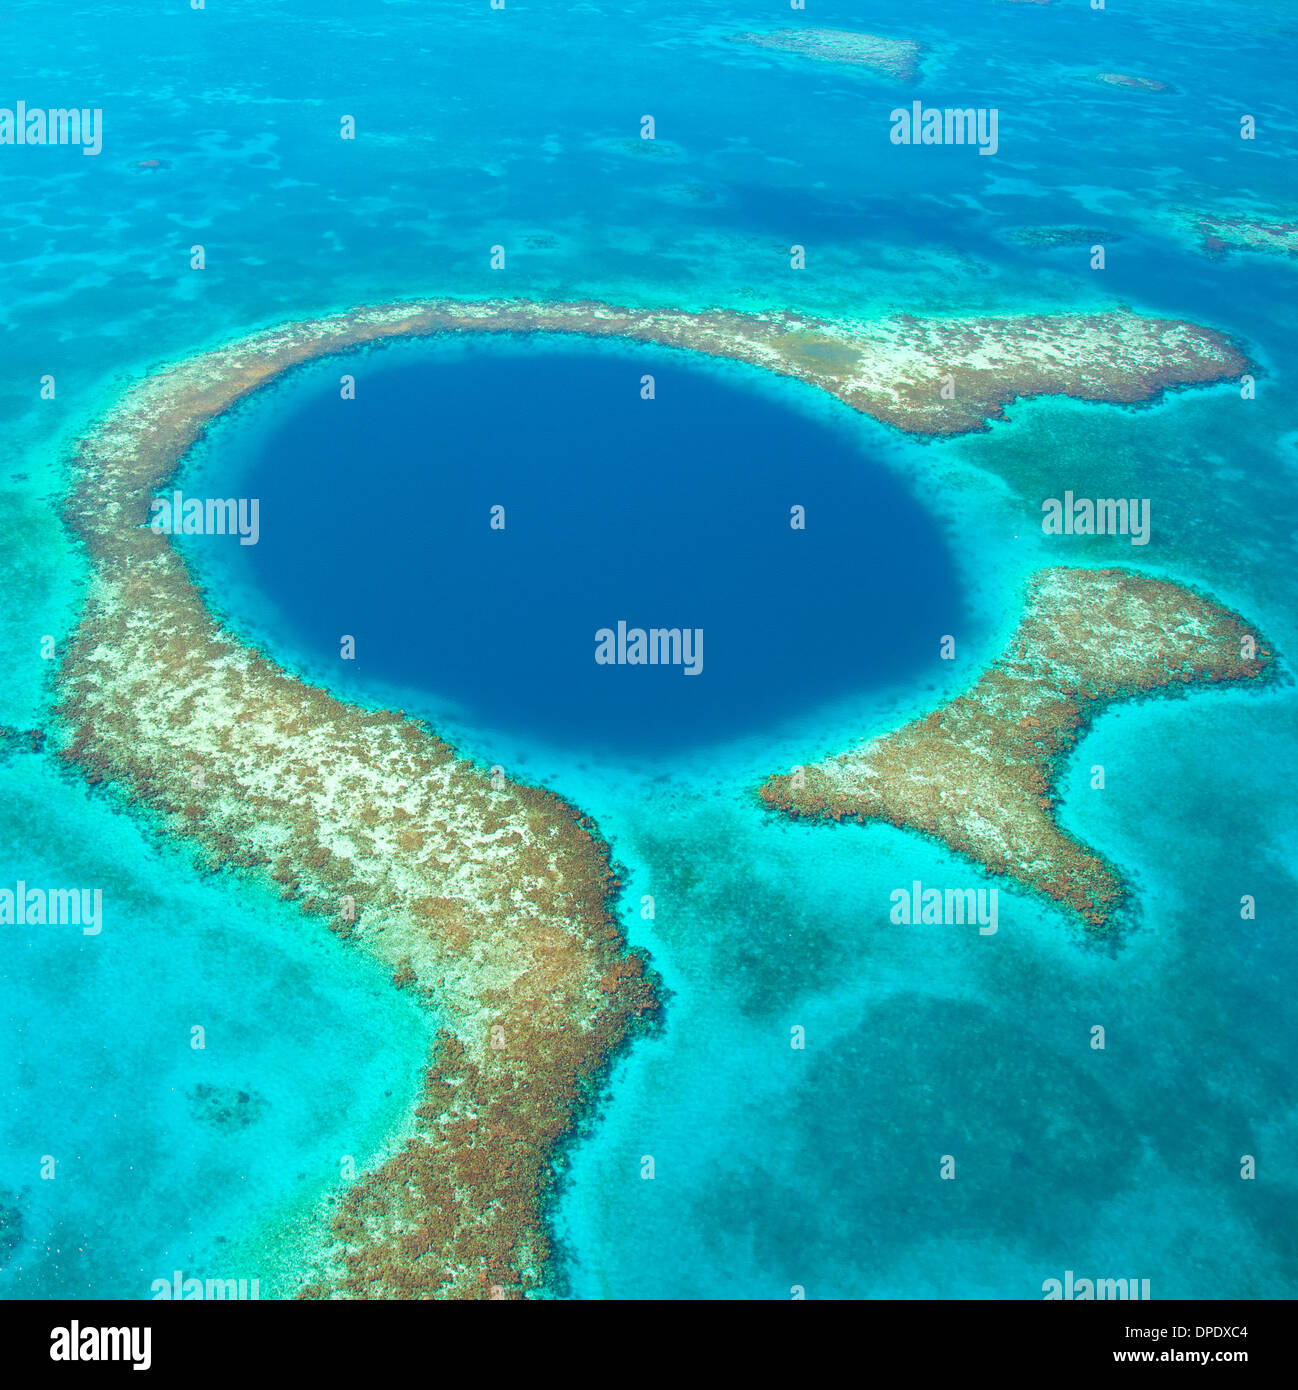 Le Trou Bleu (Blue Hole National Monument, mer des Caraïbes Belize récif méso-américain Lighthouse Reef atoll de corail dans le trou de 400 pieds Banque D'Images